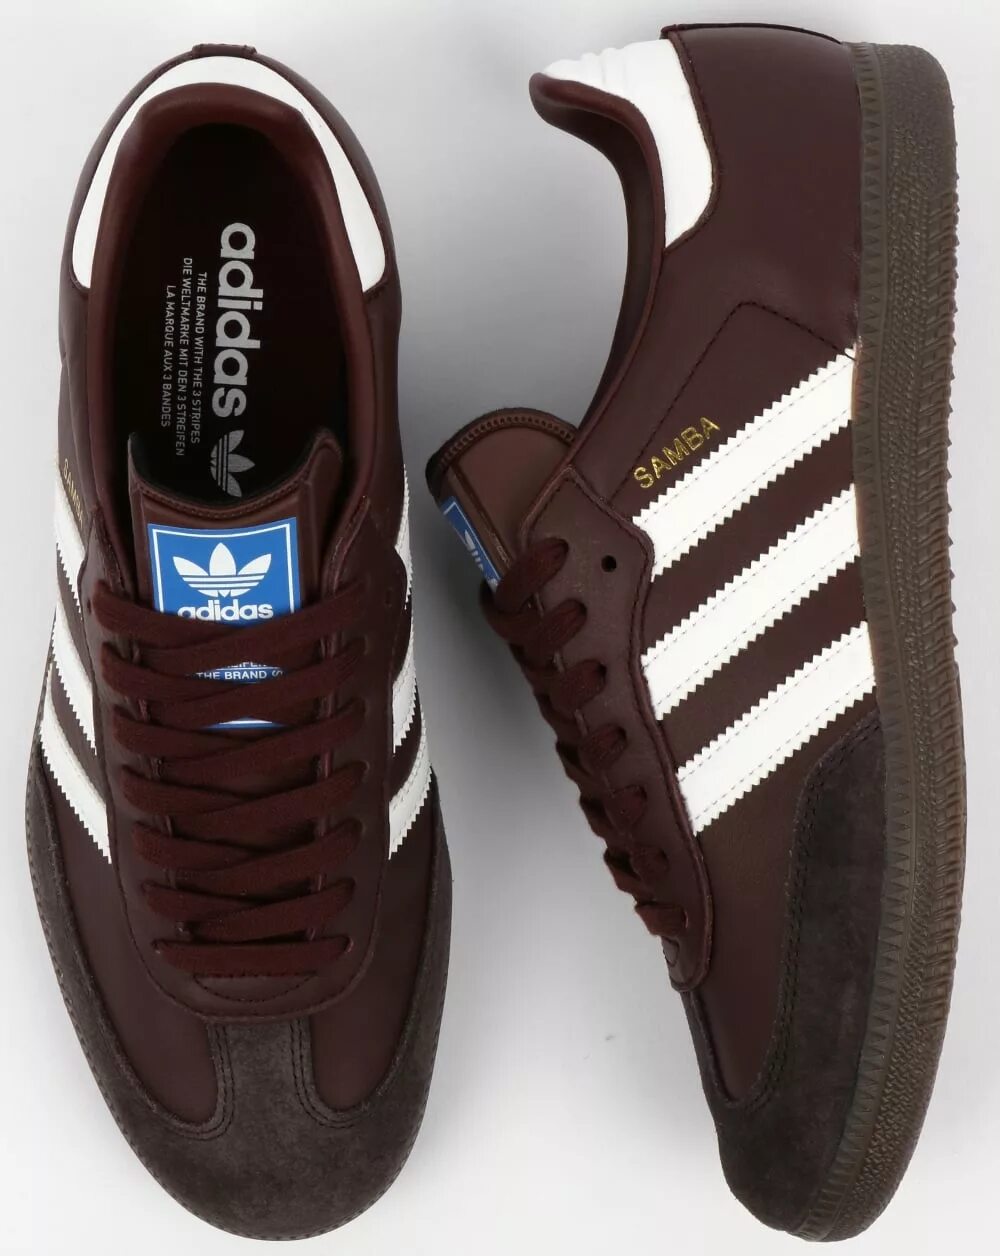 Adidas brown. Adidas Samba кожаные. Adidas Samba Brown. Adidas Samba Trainers. Кожаные adidas Samba 2010.